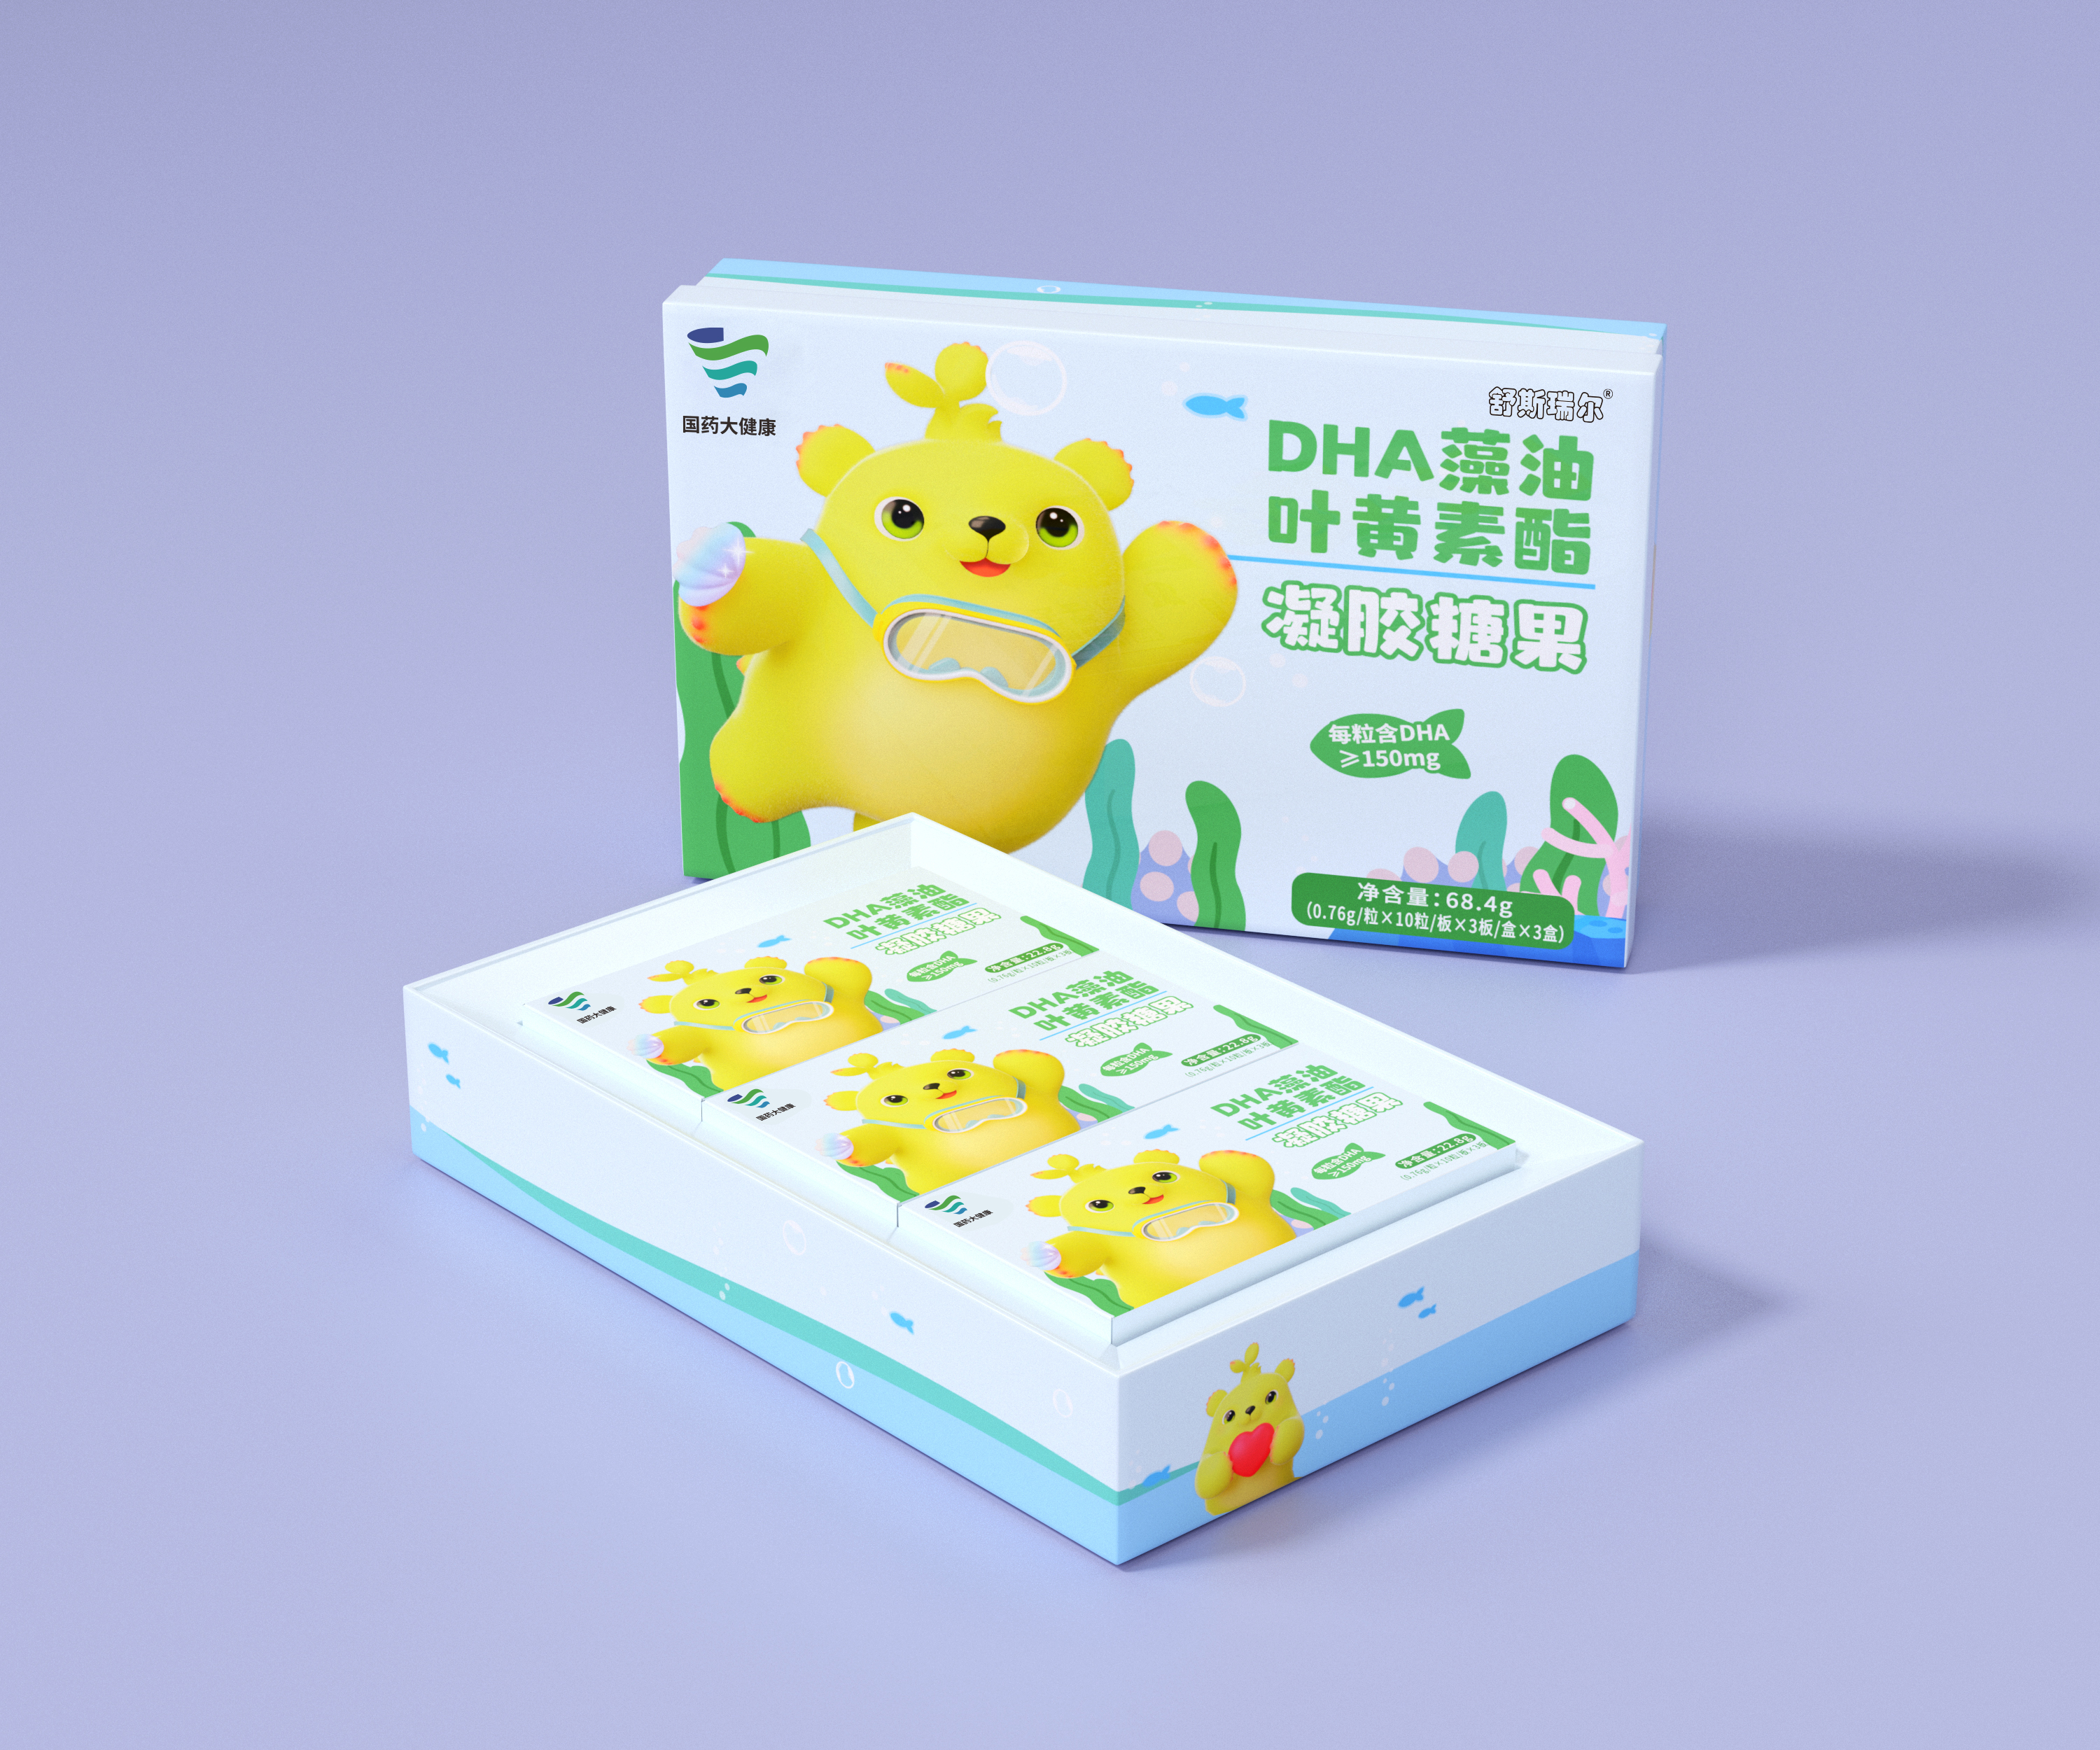 國藥大健康DHA藻油葉黃素酯凝膠糖果 DHA新業態